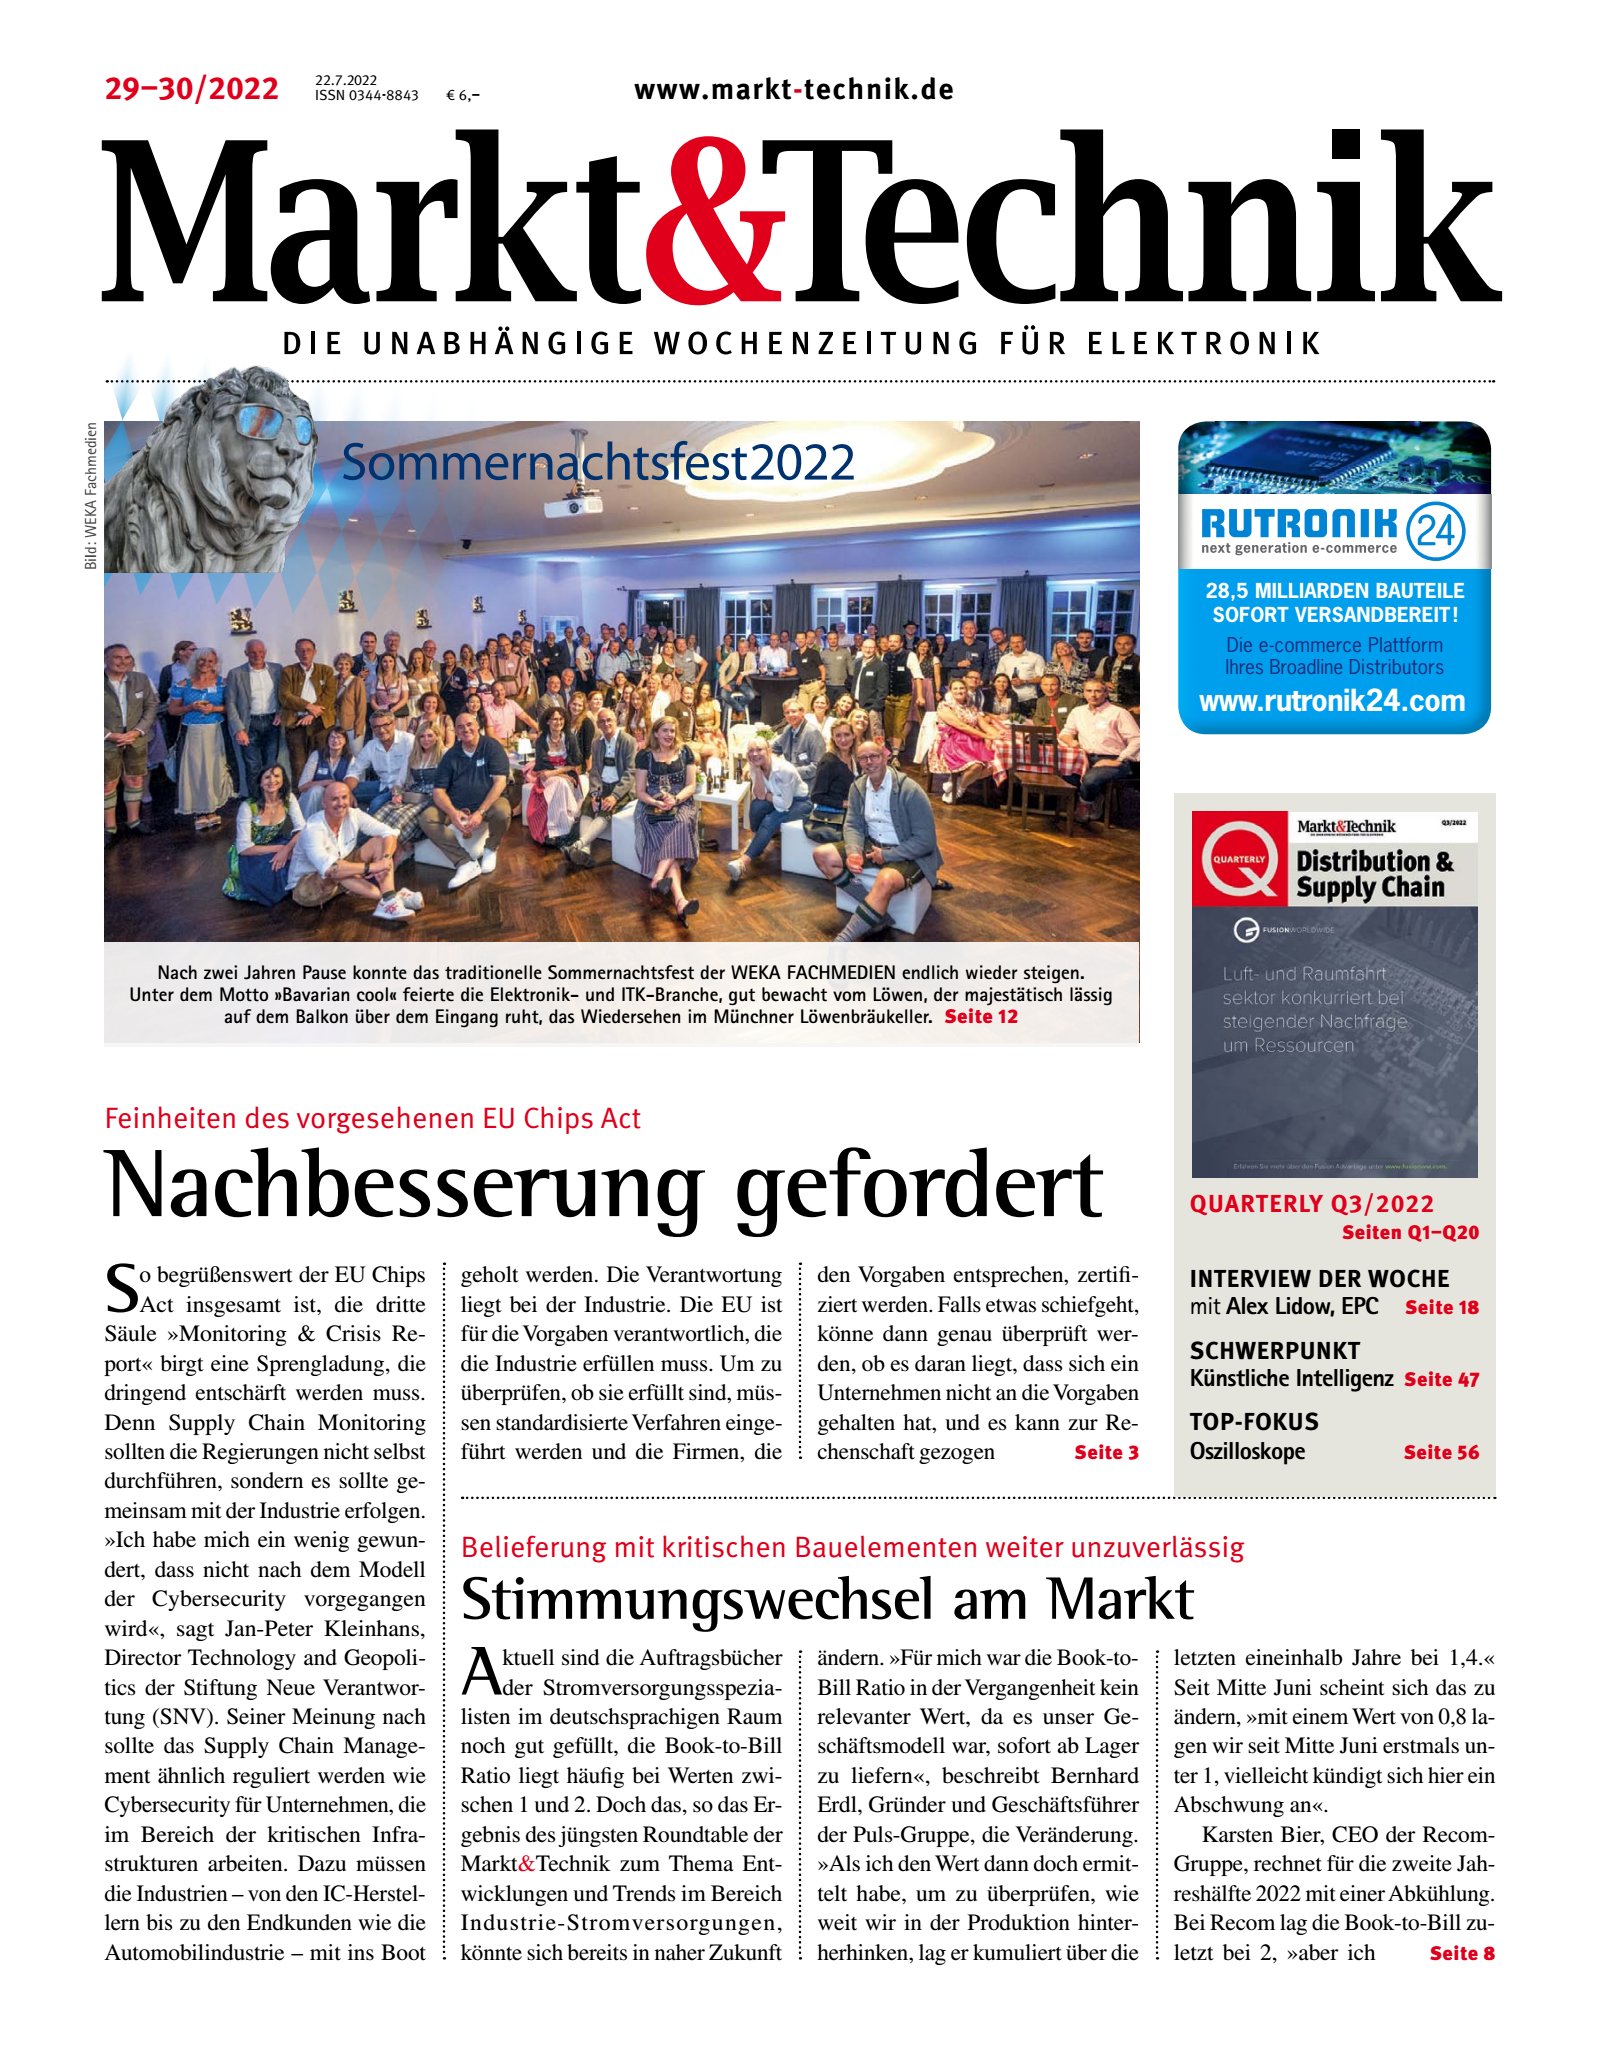 Markt&Technik 29-30/22 Digital